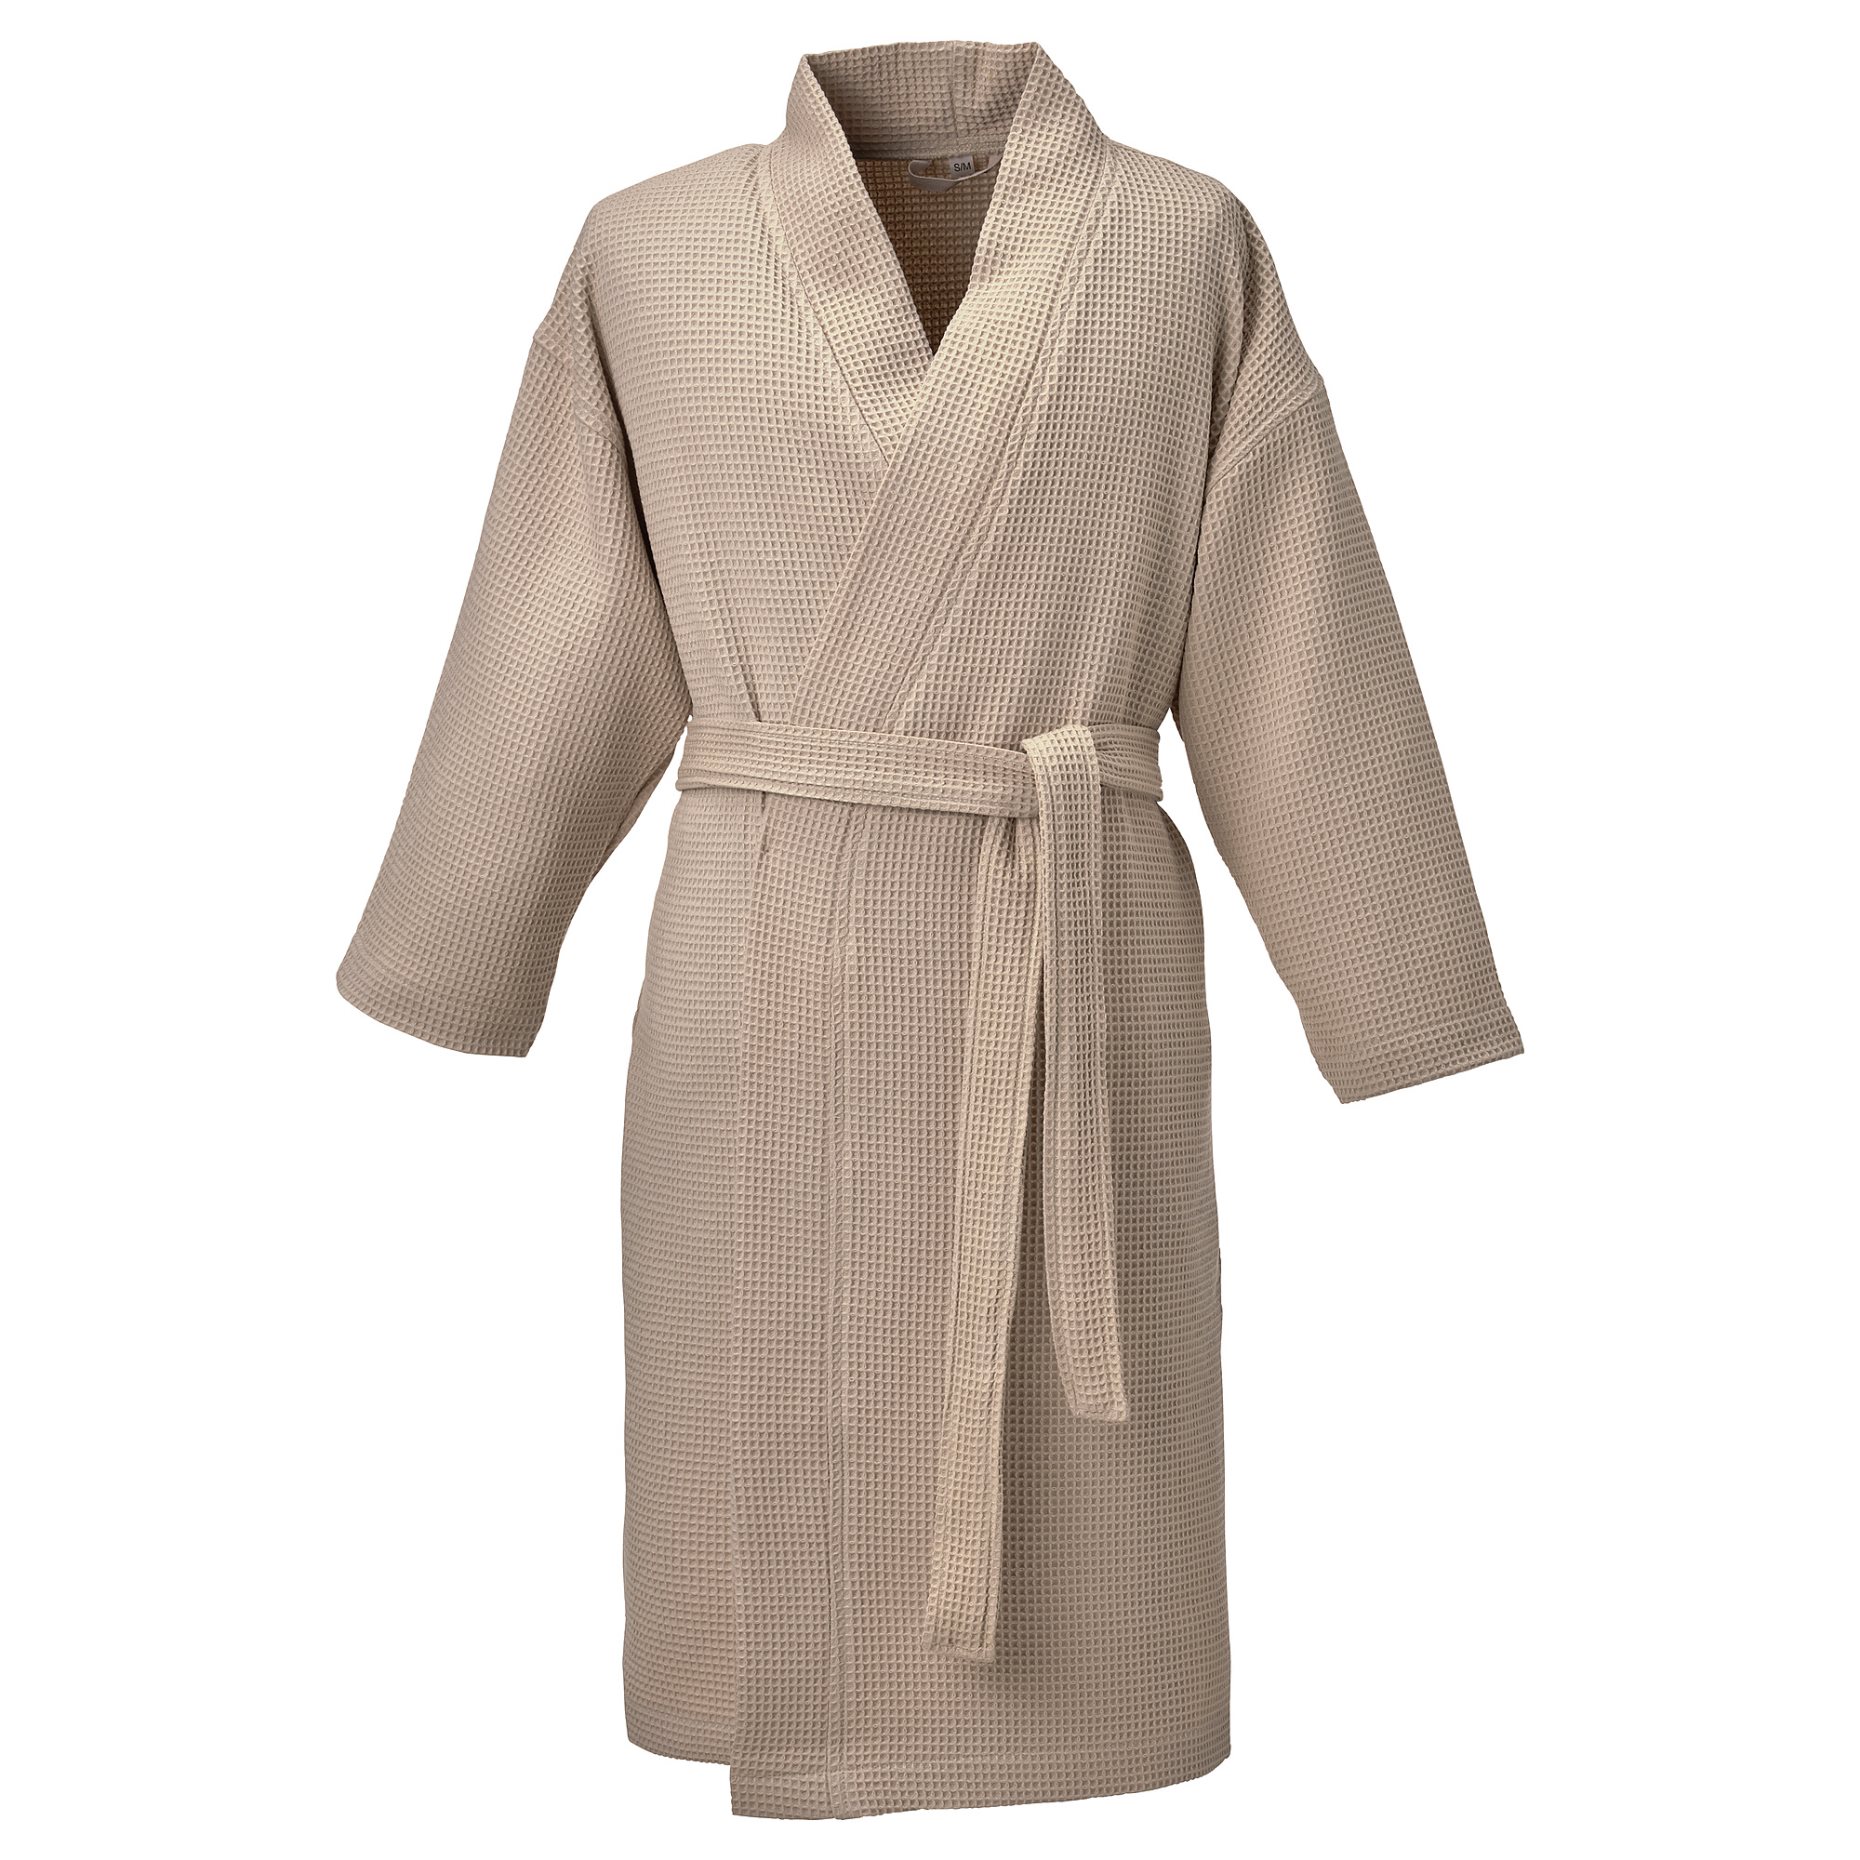 BJÄLVEN, bath robe, L/XL, 205.129.76